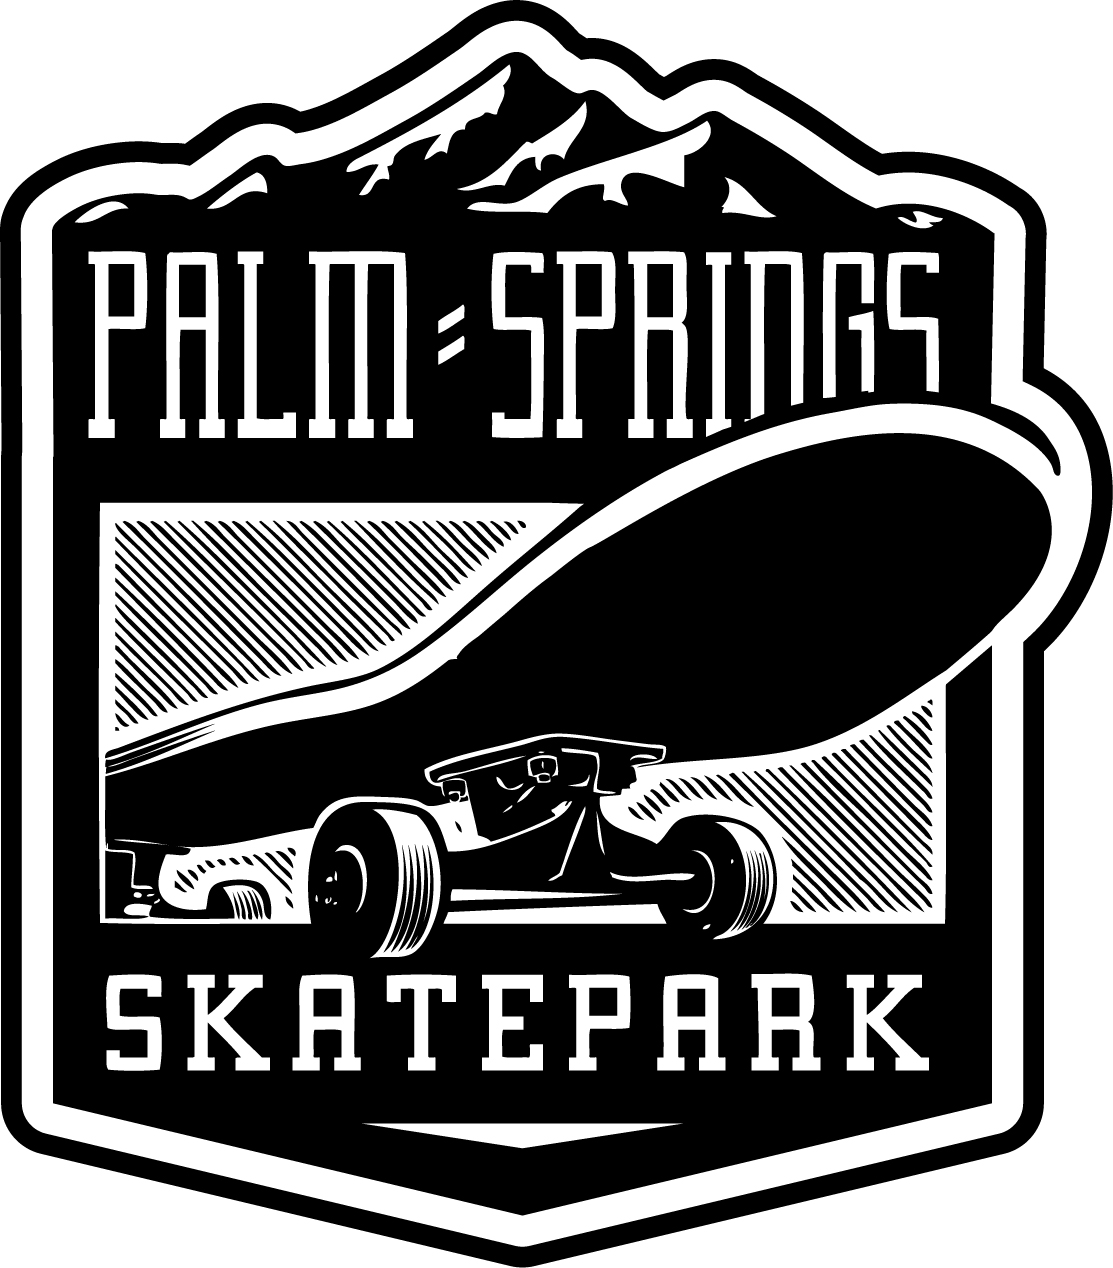 Palm-Springs-Logo copy.jpg